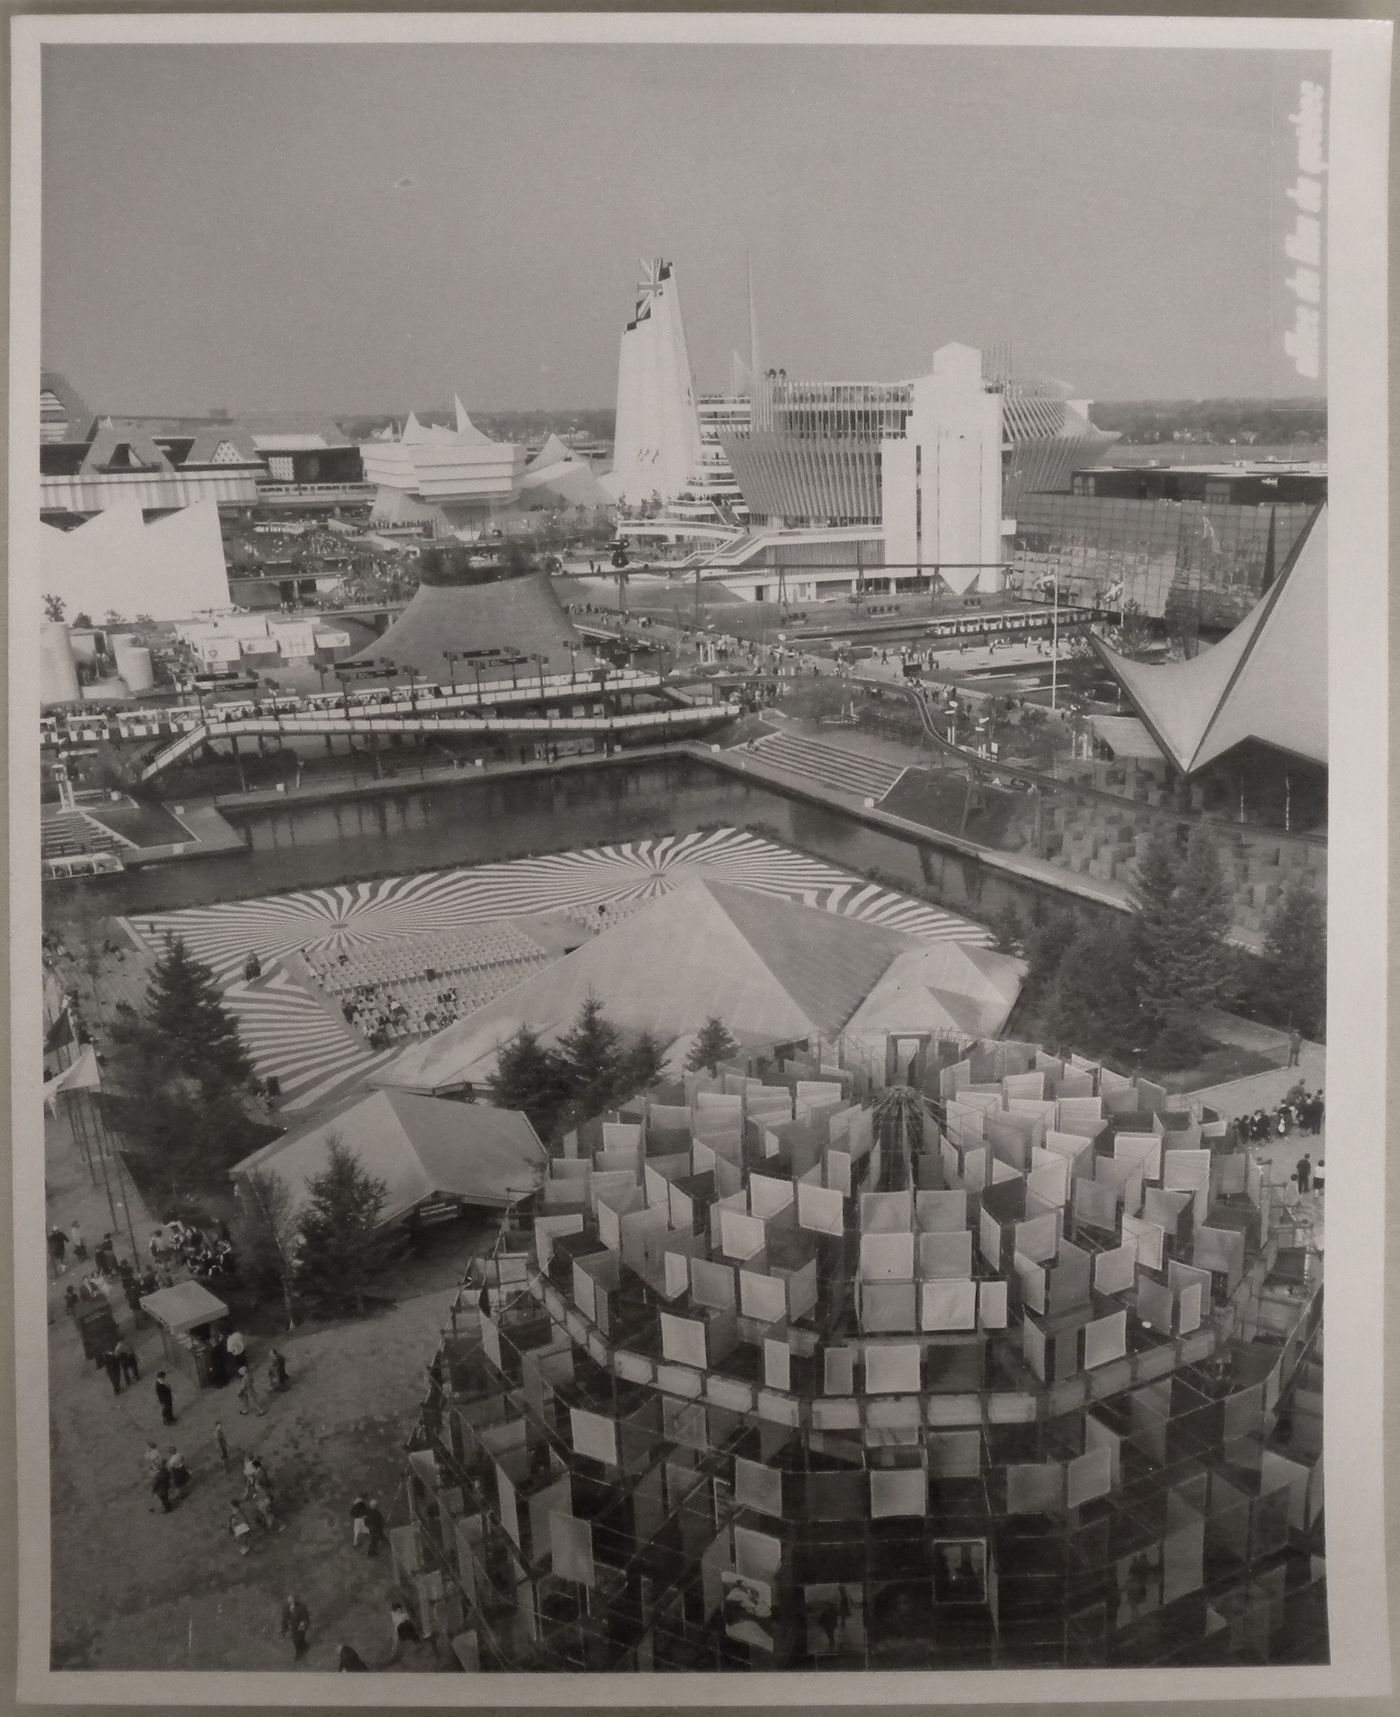 Partial view of the Île Notre-Dame site from the Canada's Pavilion, Expo 67, Montréal, Québec